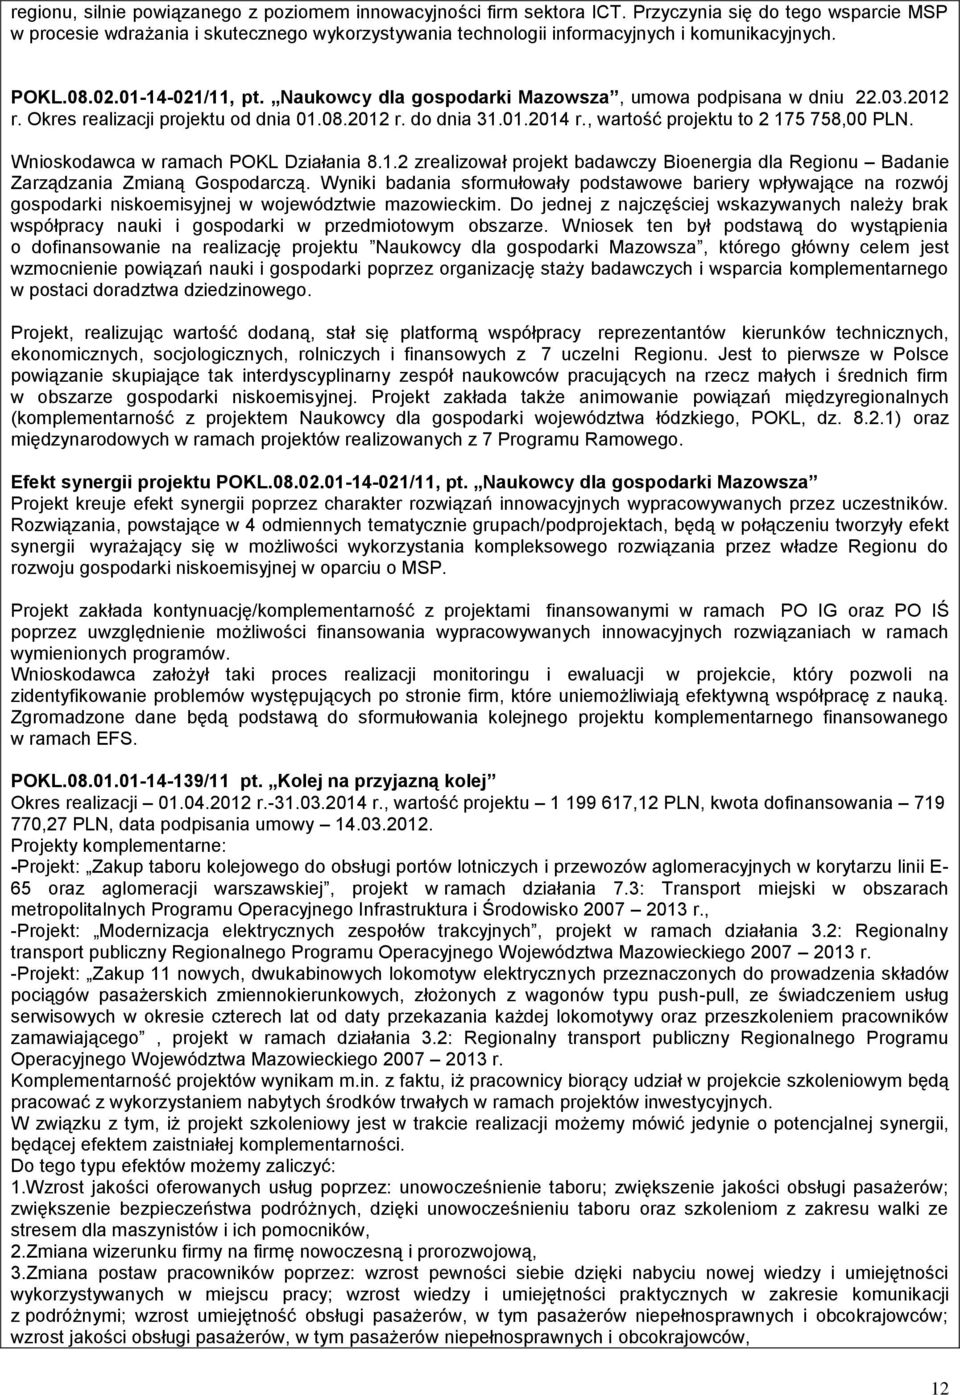 Naukowcy dla gospodarki Mazowsza, umowa podpisana w dniu 22.03.2012 r. Okres realizacji projektu od dnia 01.08.2012 r. do dnia 31.01.2014 r., wartość projektu to 2 175 758,00 PLN.